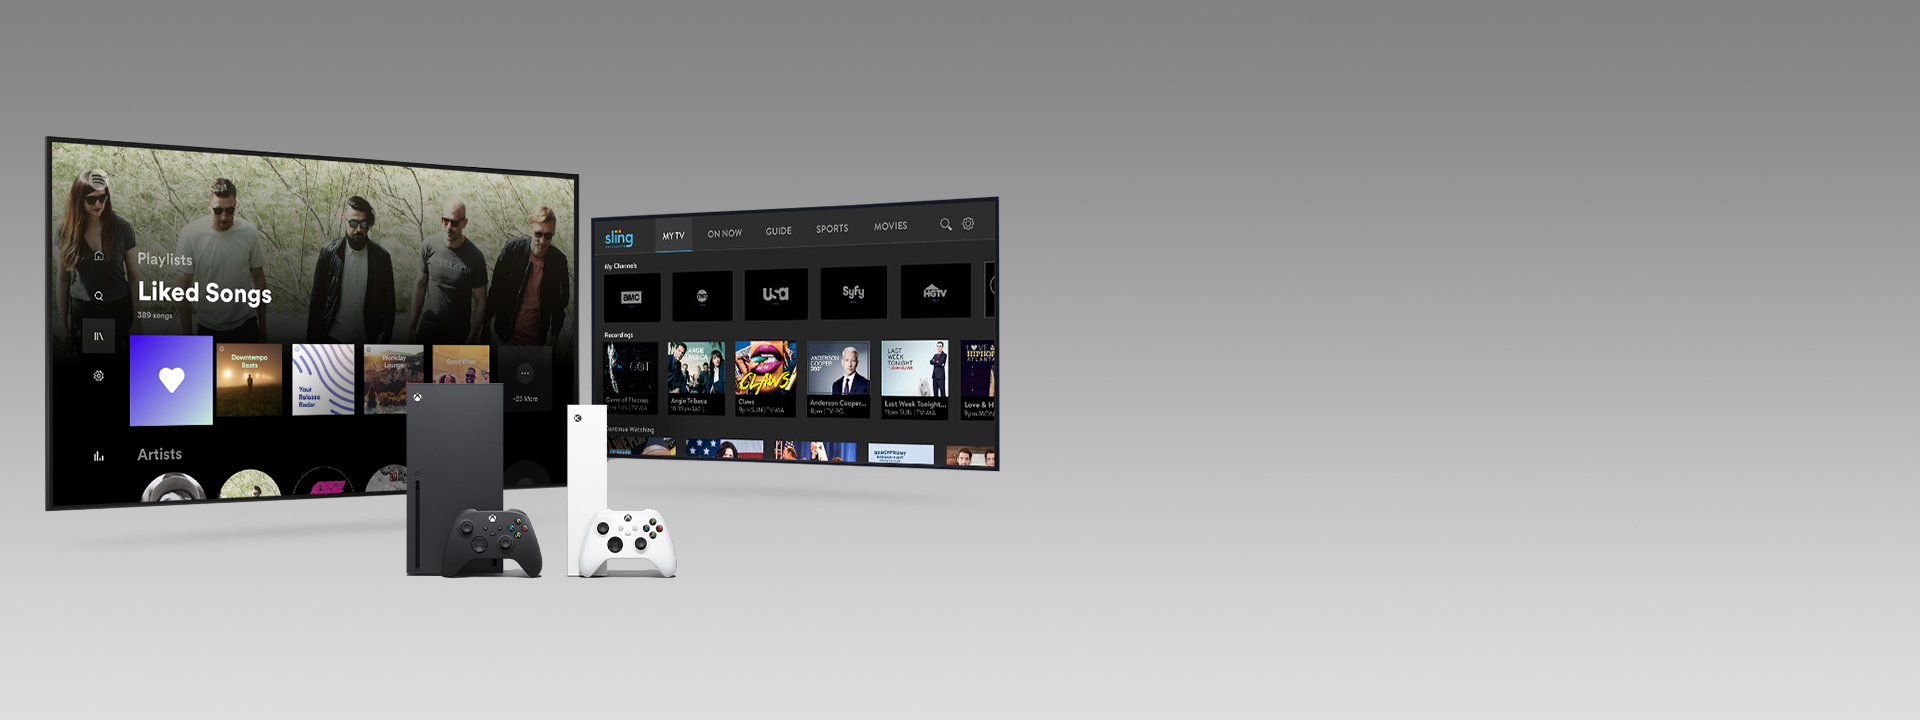 Konzole Xbox Series X a Series S s ovladači před dvěma televizními obrazovkami zahrnujícími uživatelská rozhraní aplikace.